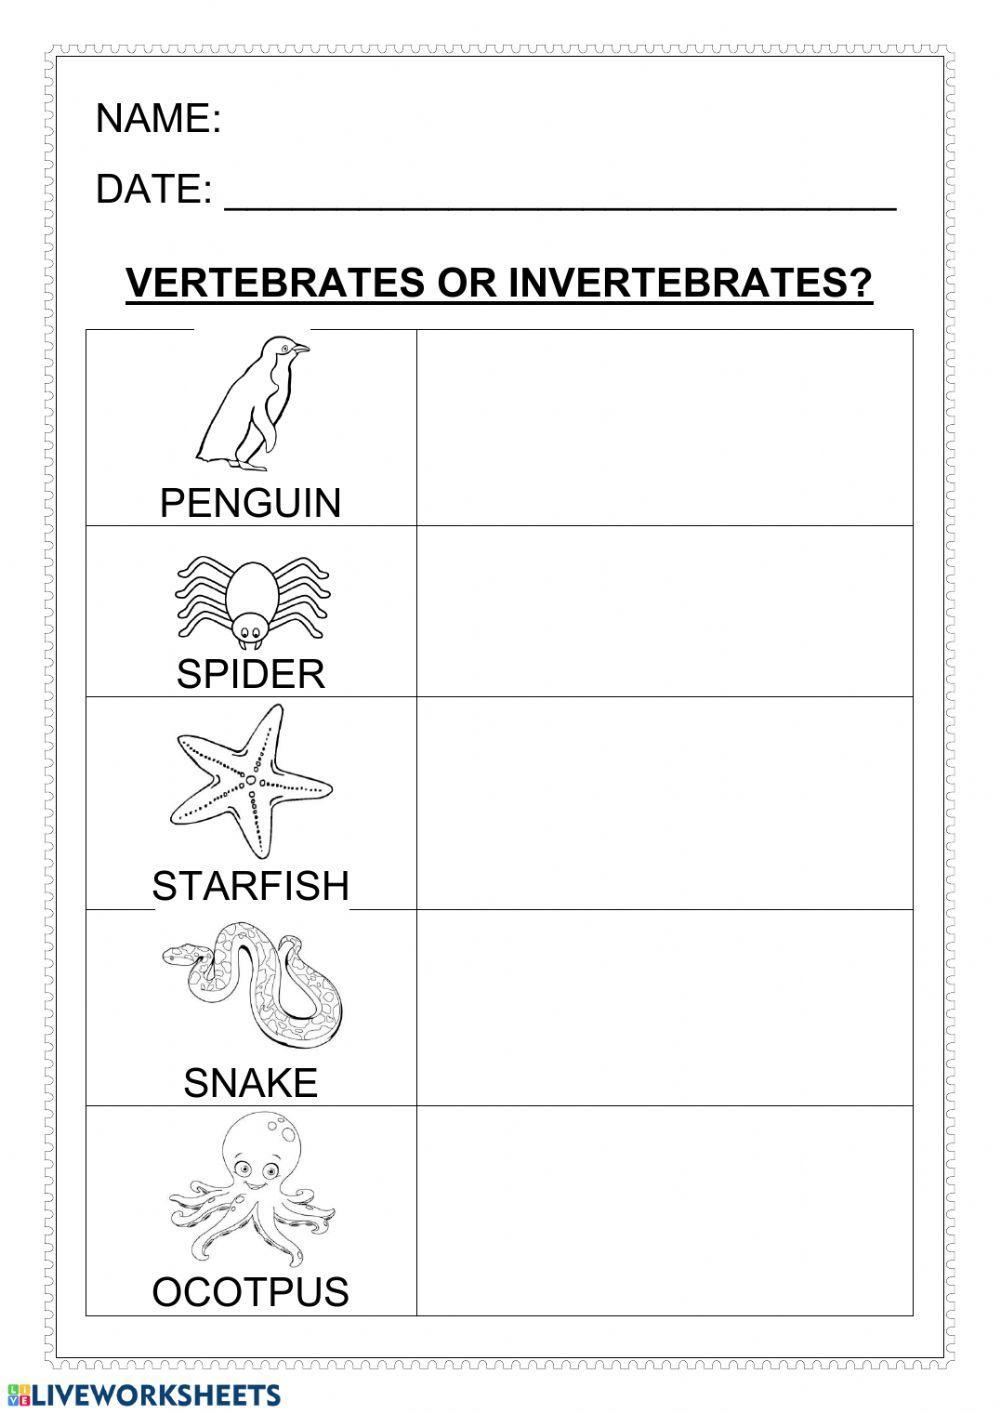 Vertebrates-invertebrates